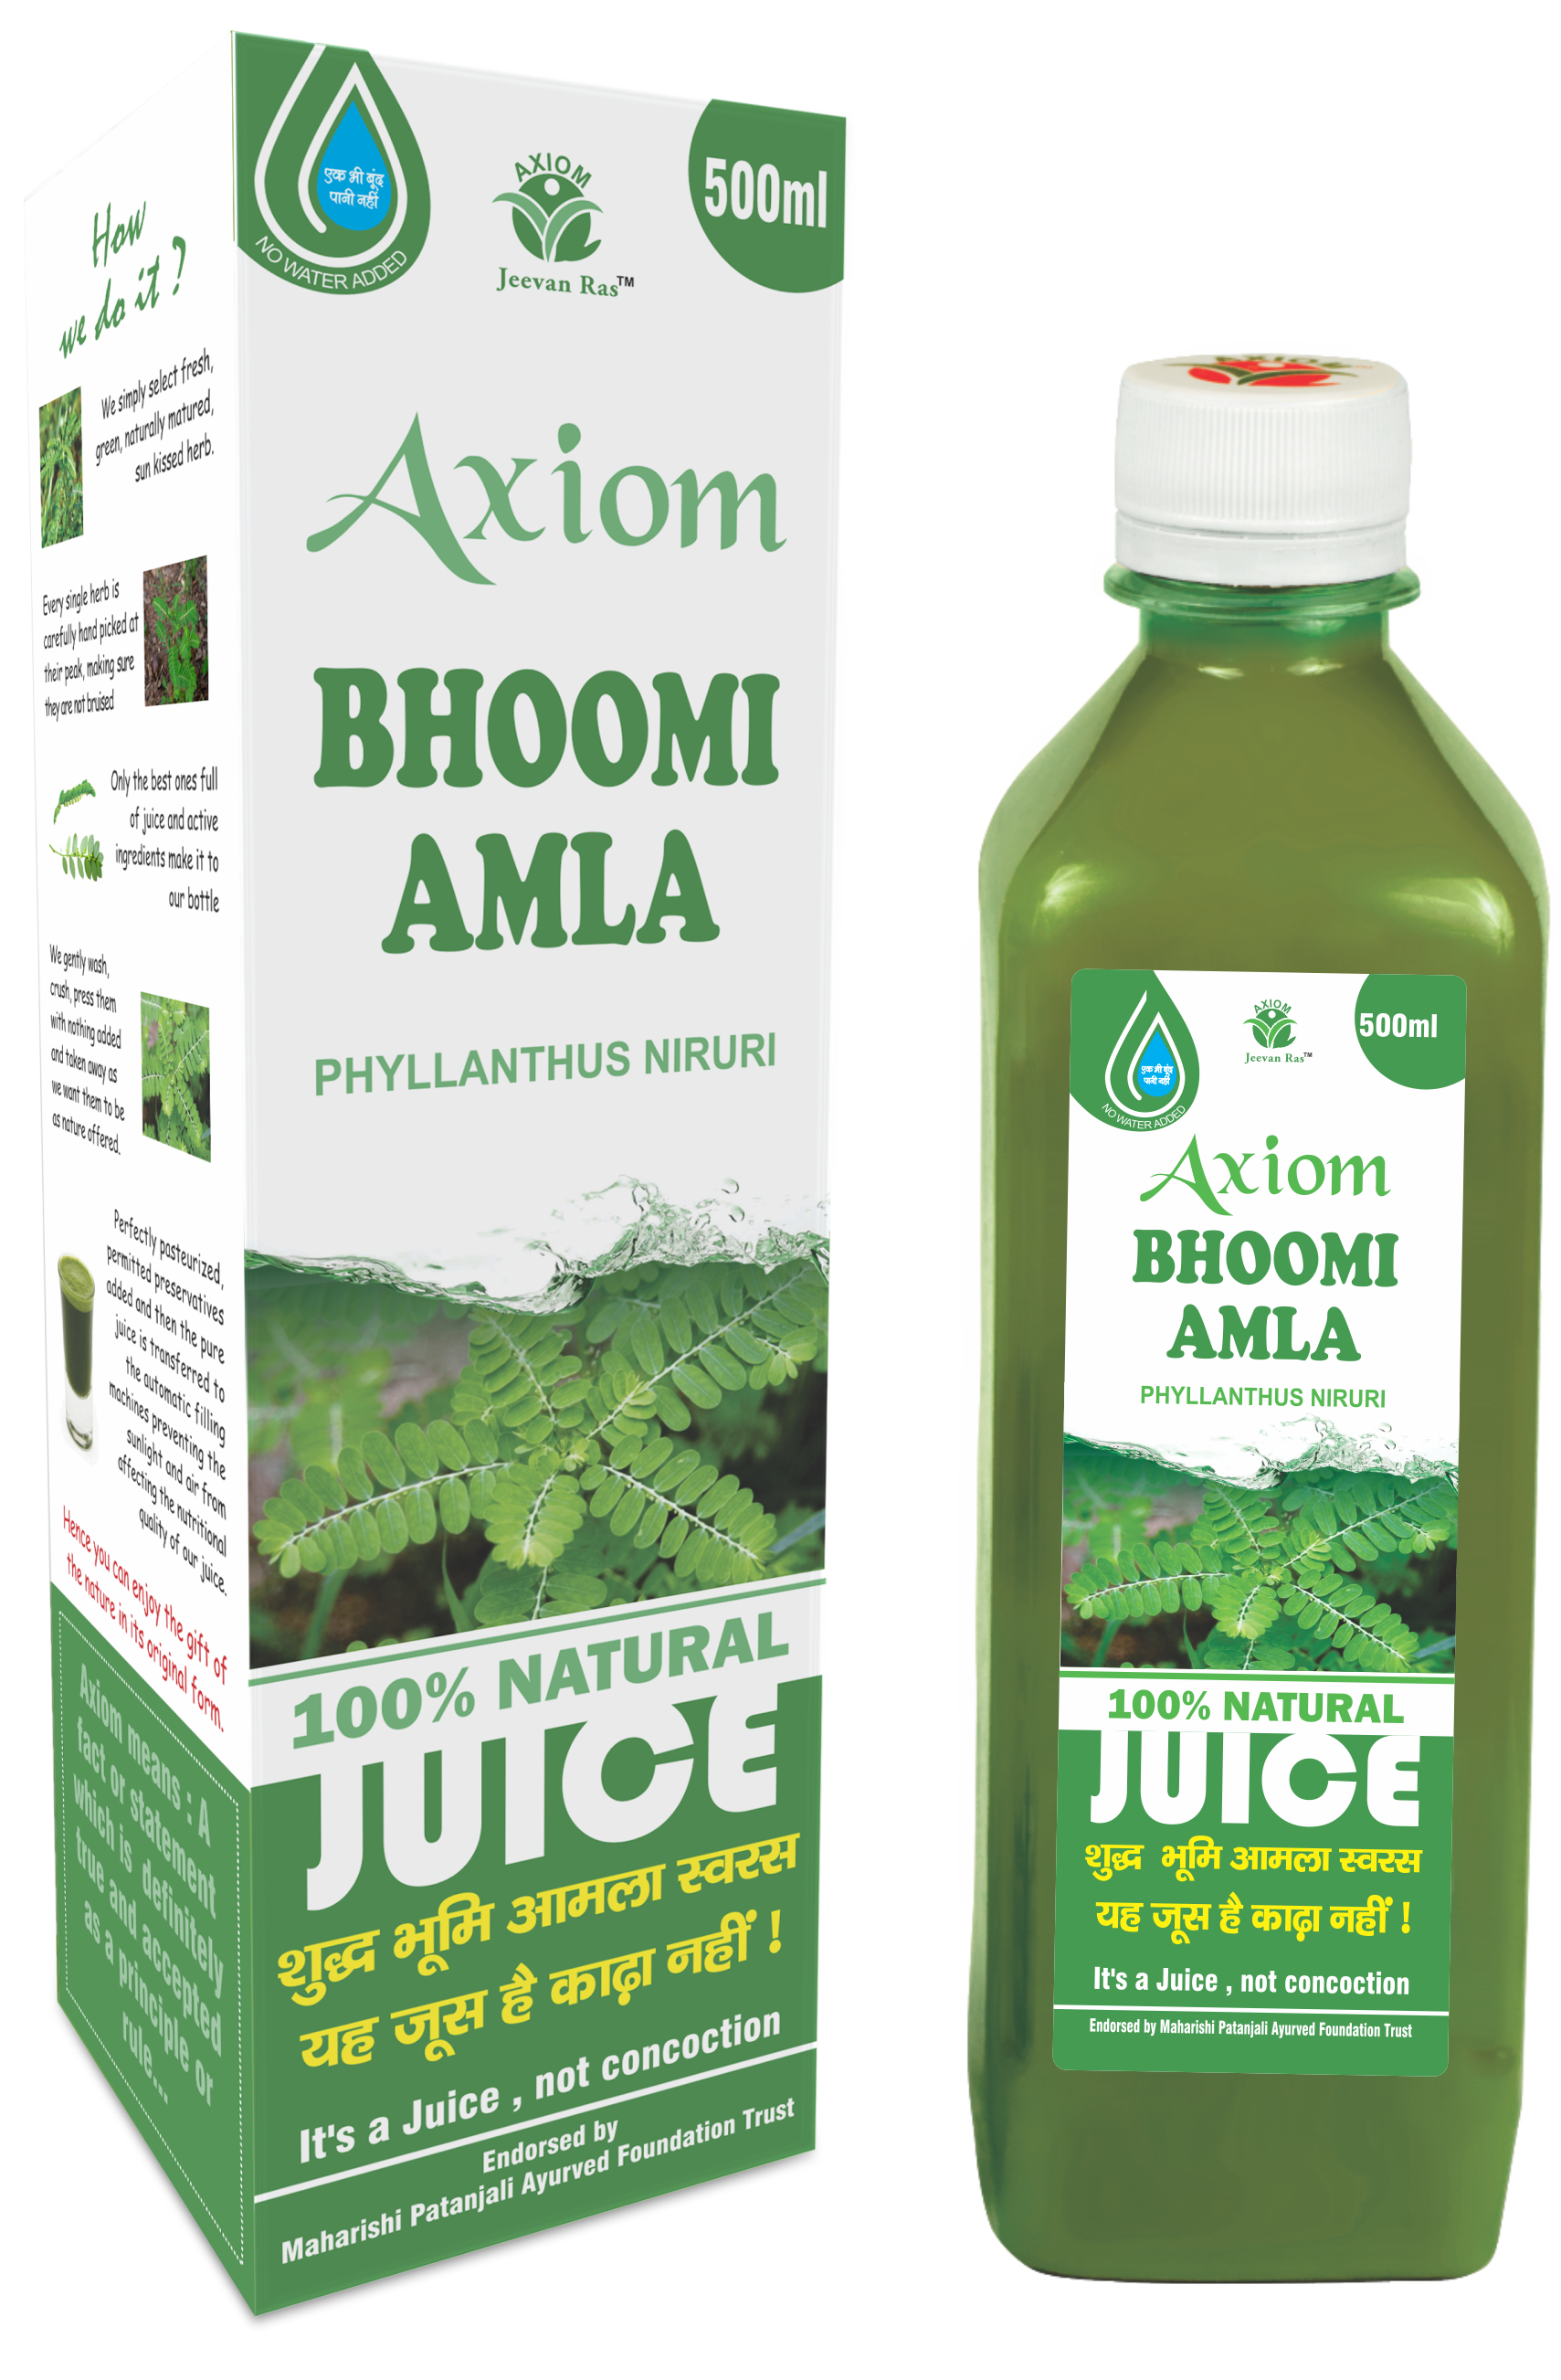 Axiom Bhoomi Amla Juice